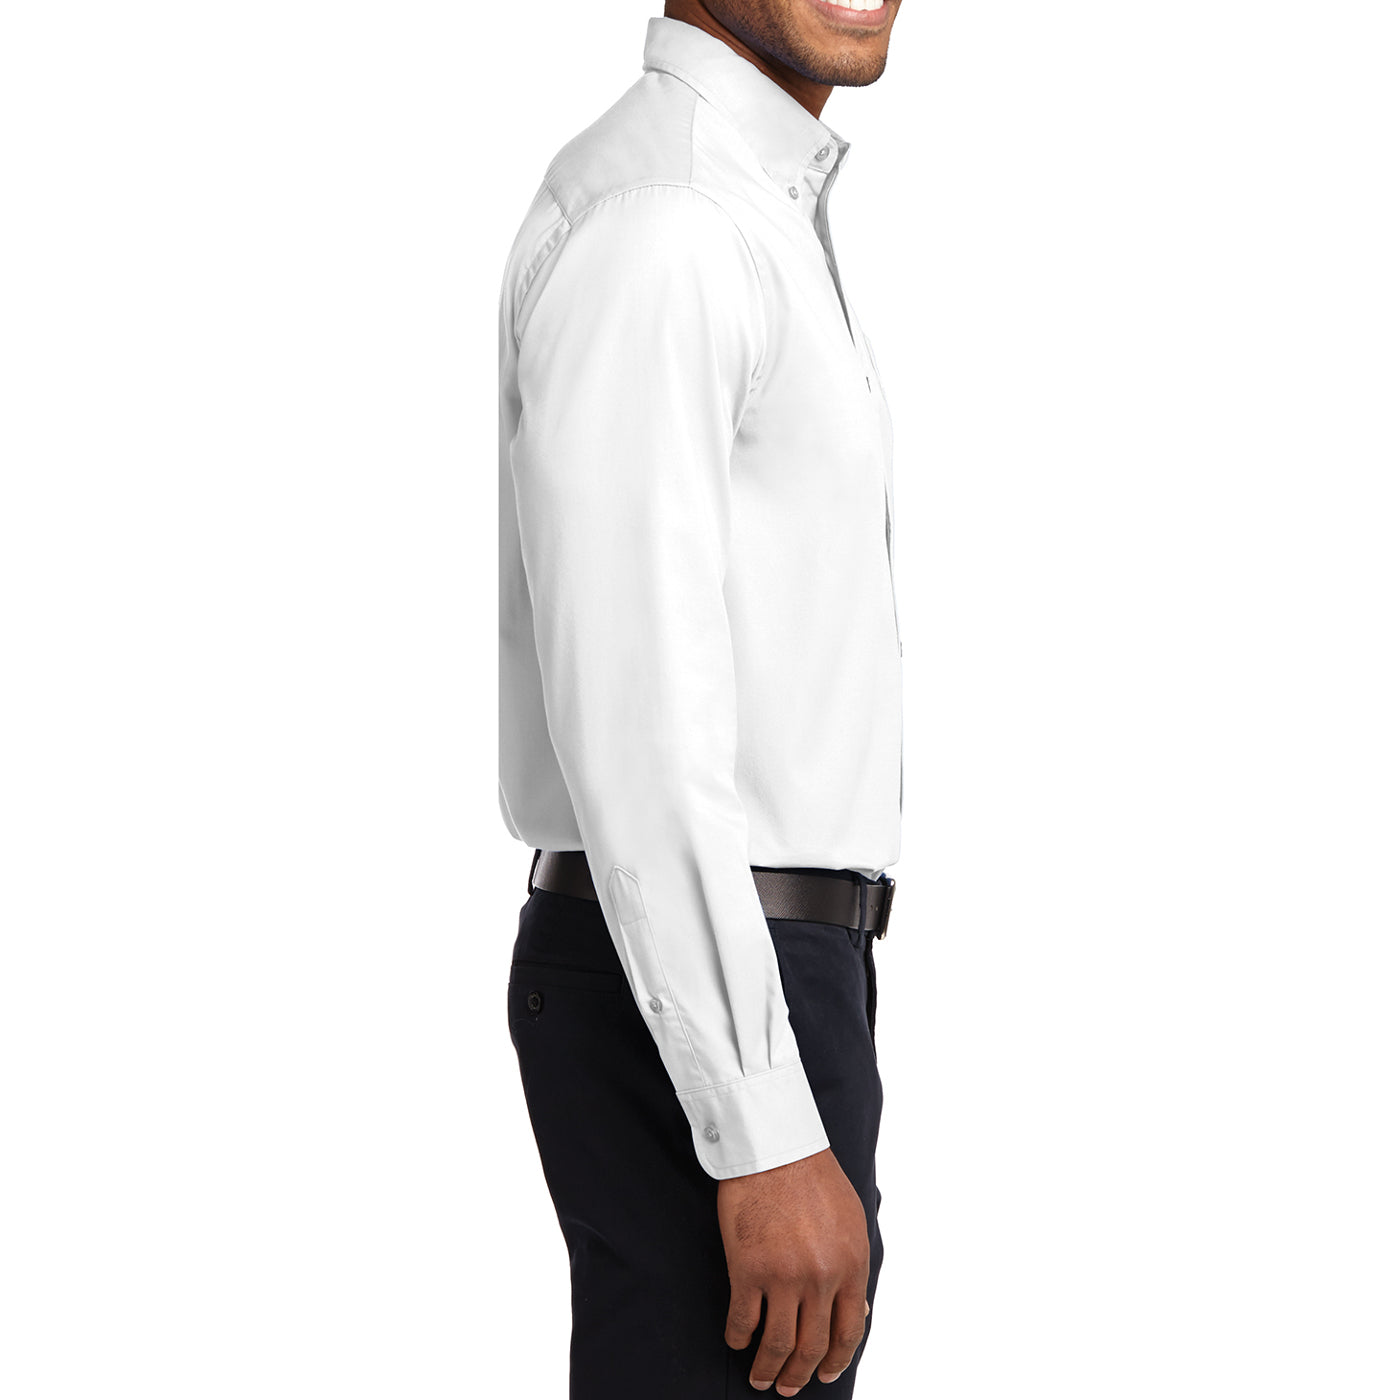 Men's Long Sleeve Easy Care Shirt - White/ Light Stone - Side